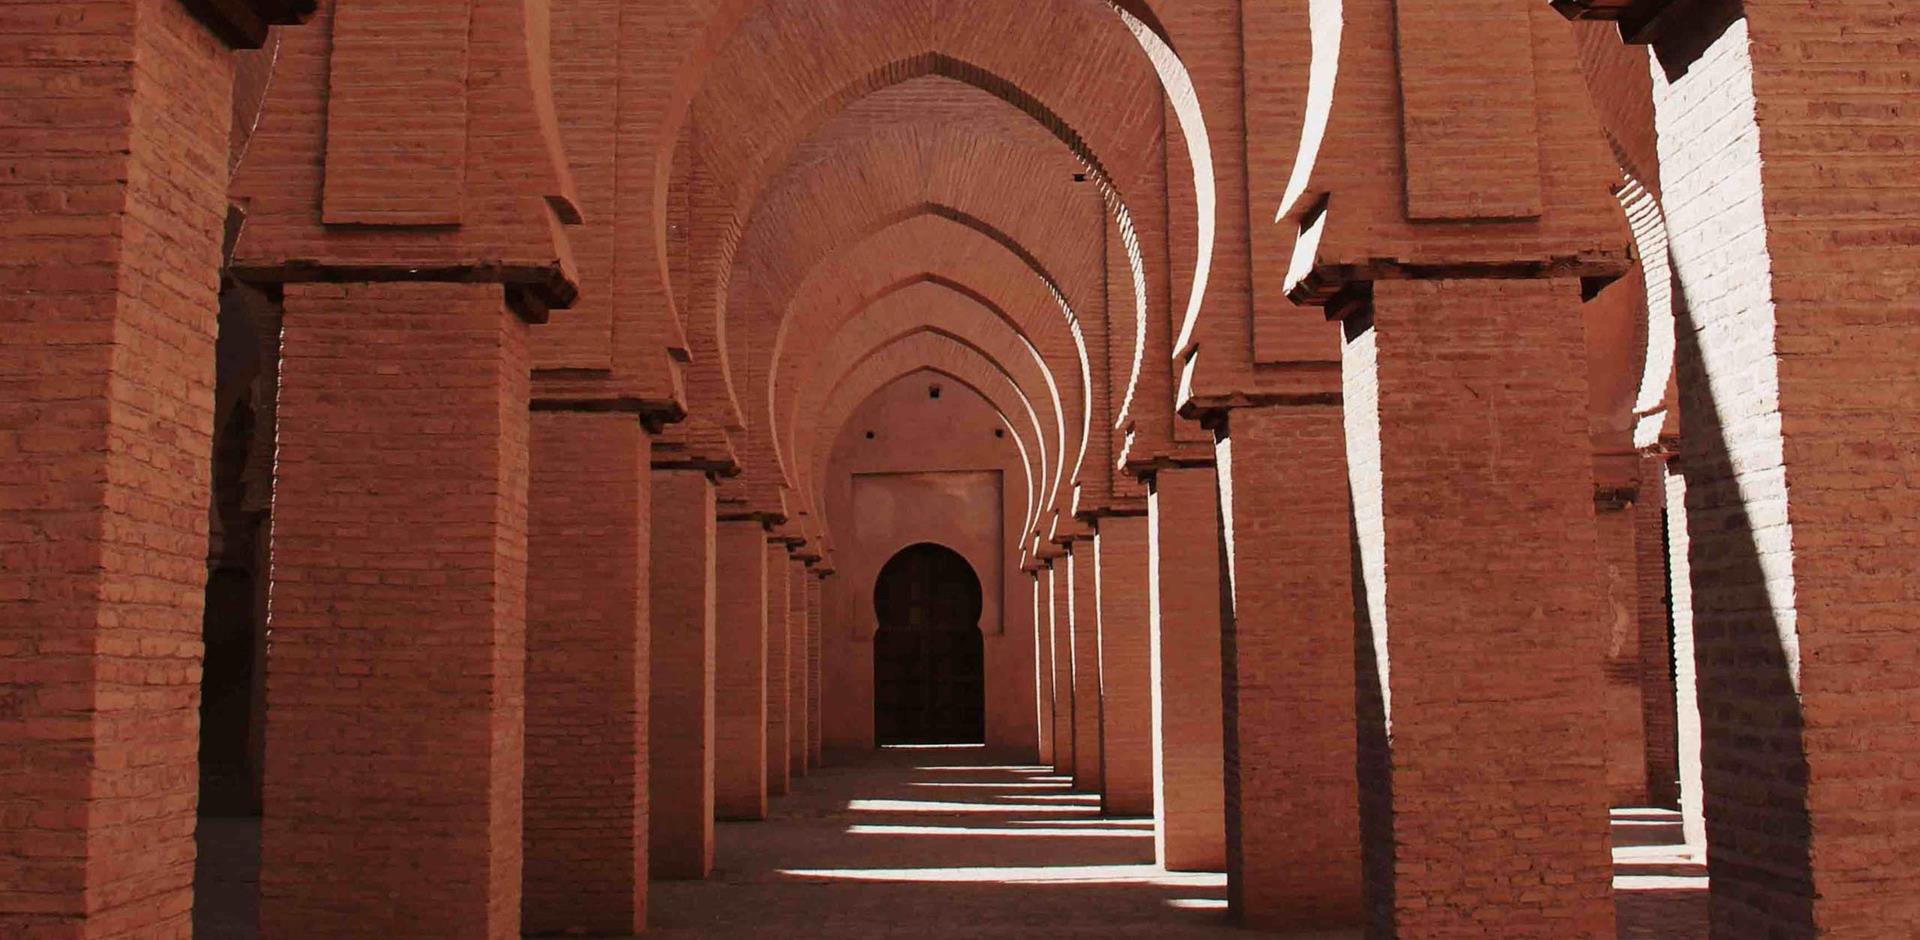 Tinmel Mosque, Morocco